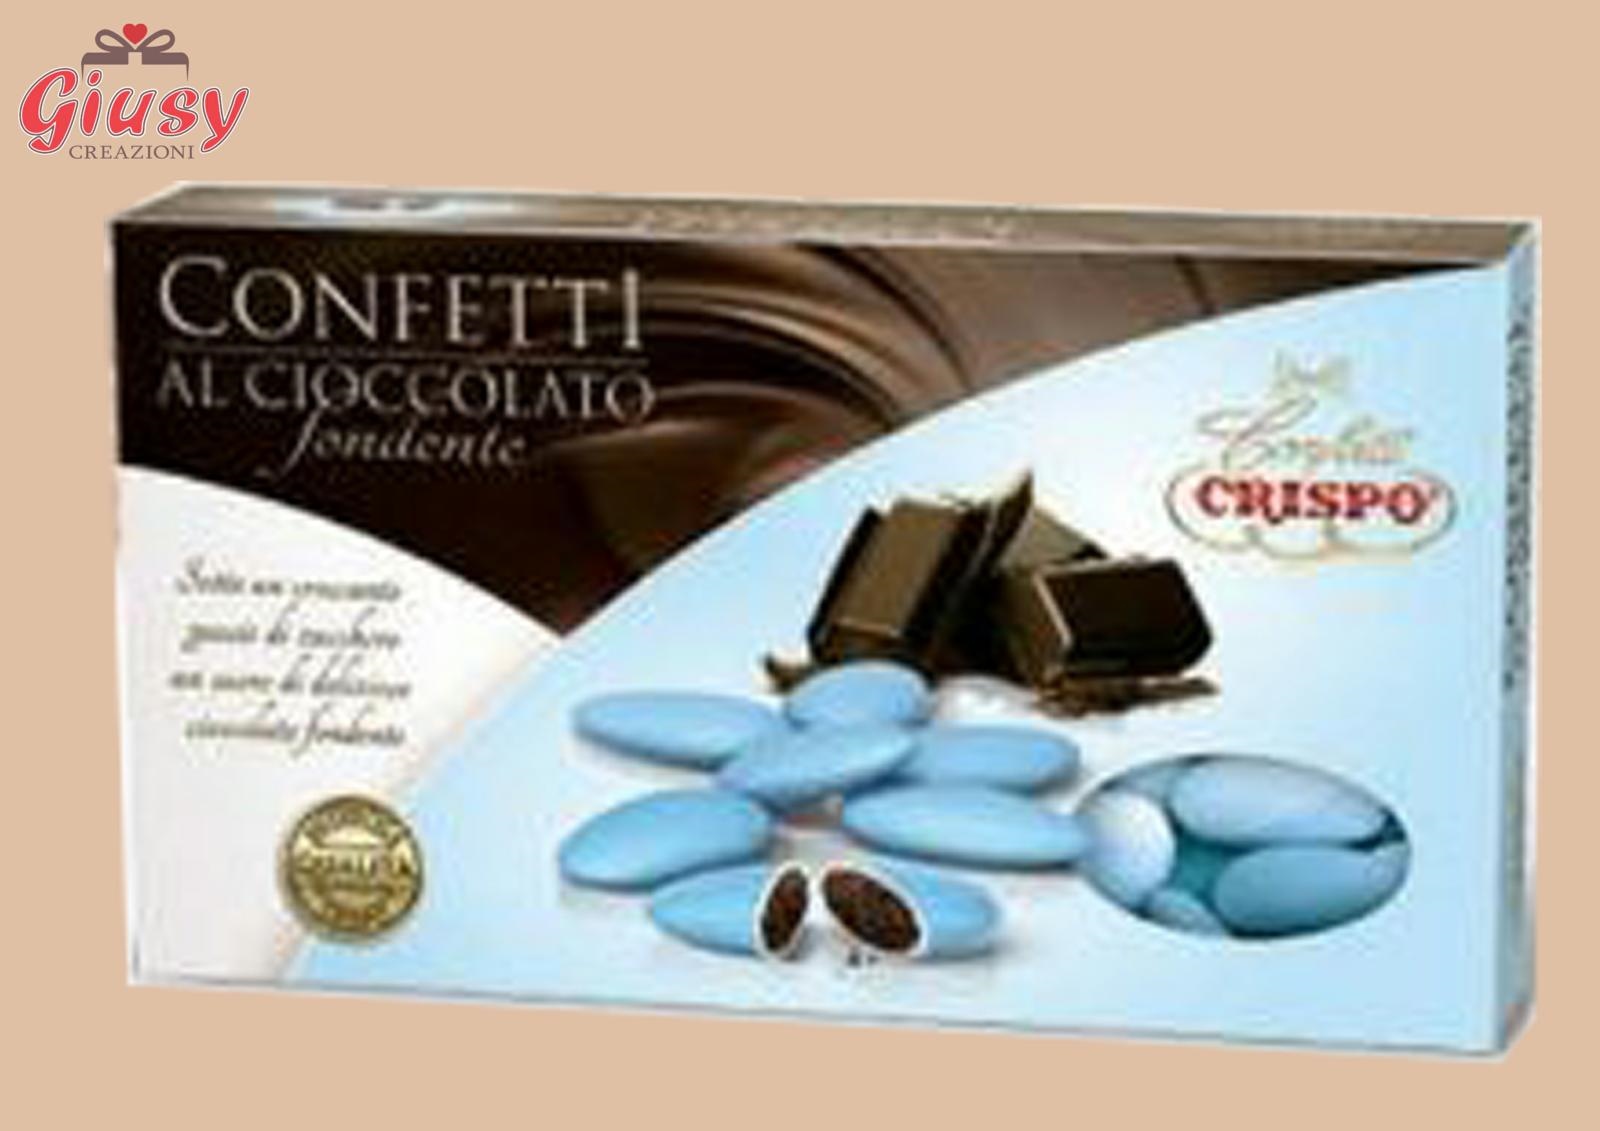 Confetti Crispo Al Cioccolato Fondente Celeste Confezione 1Kg